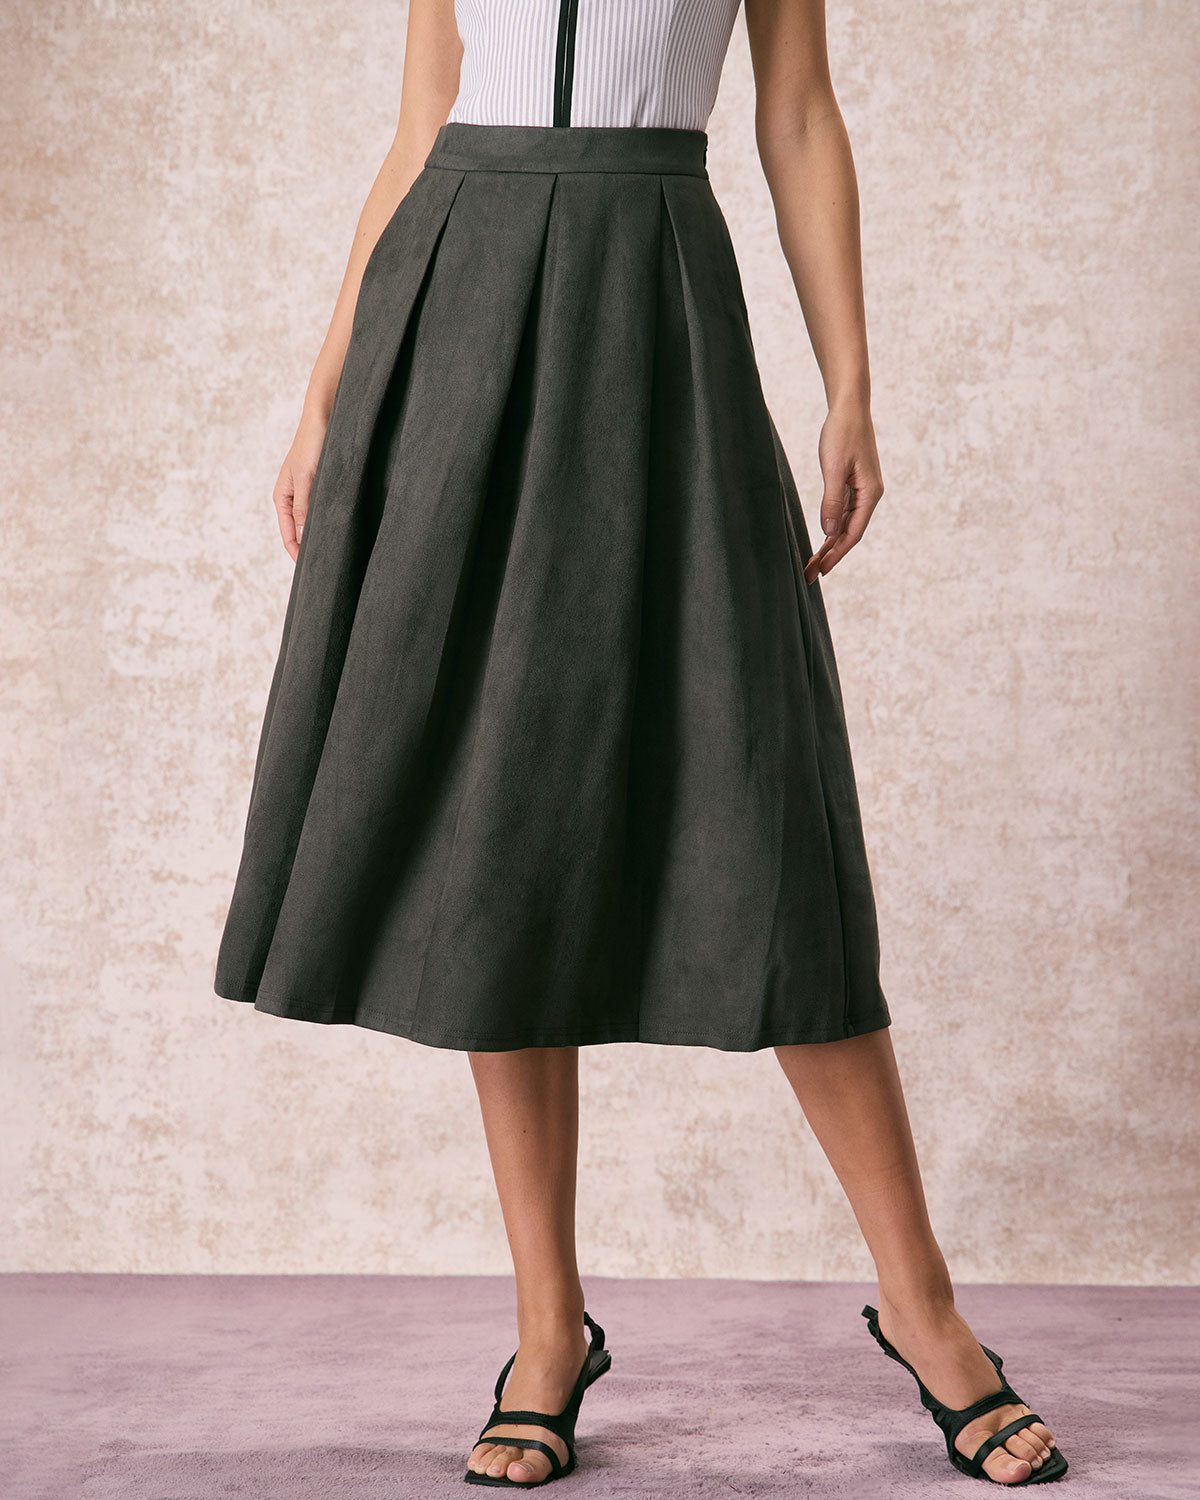 Fsqjgq Skirts for Women Casual Midi Skirt with Pockets Womens High Waist  Midi Skirt Solid Satin Dress Zipper Elegant Summer Skirts Black Xl -  Walmart.com